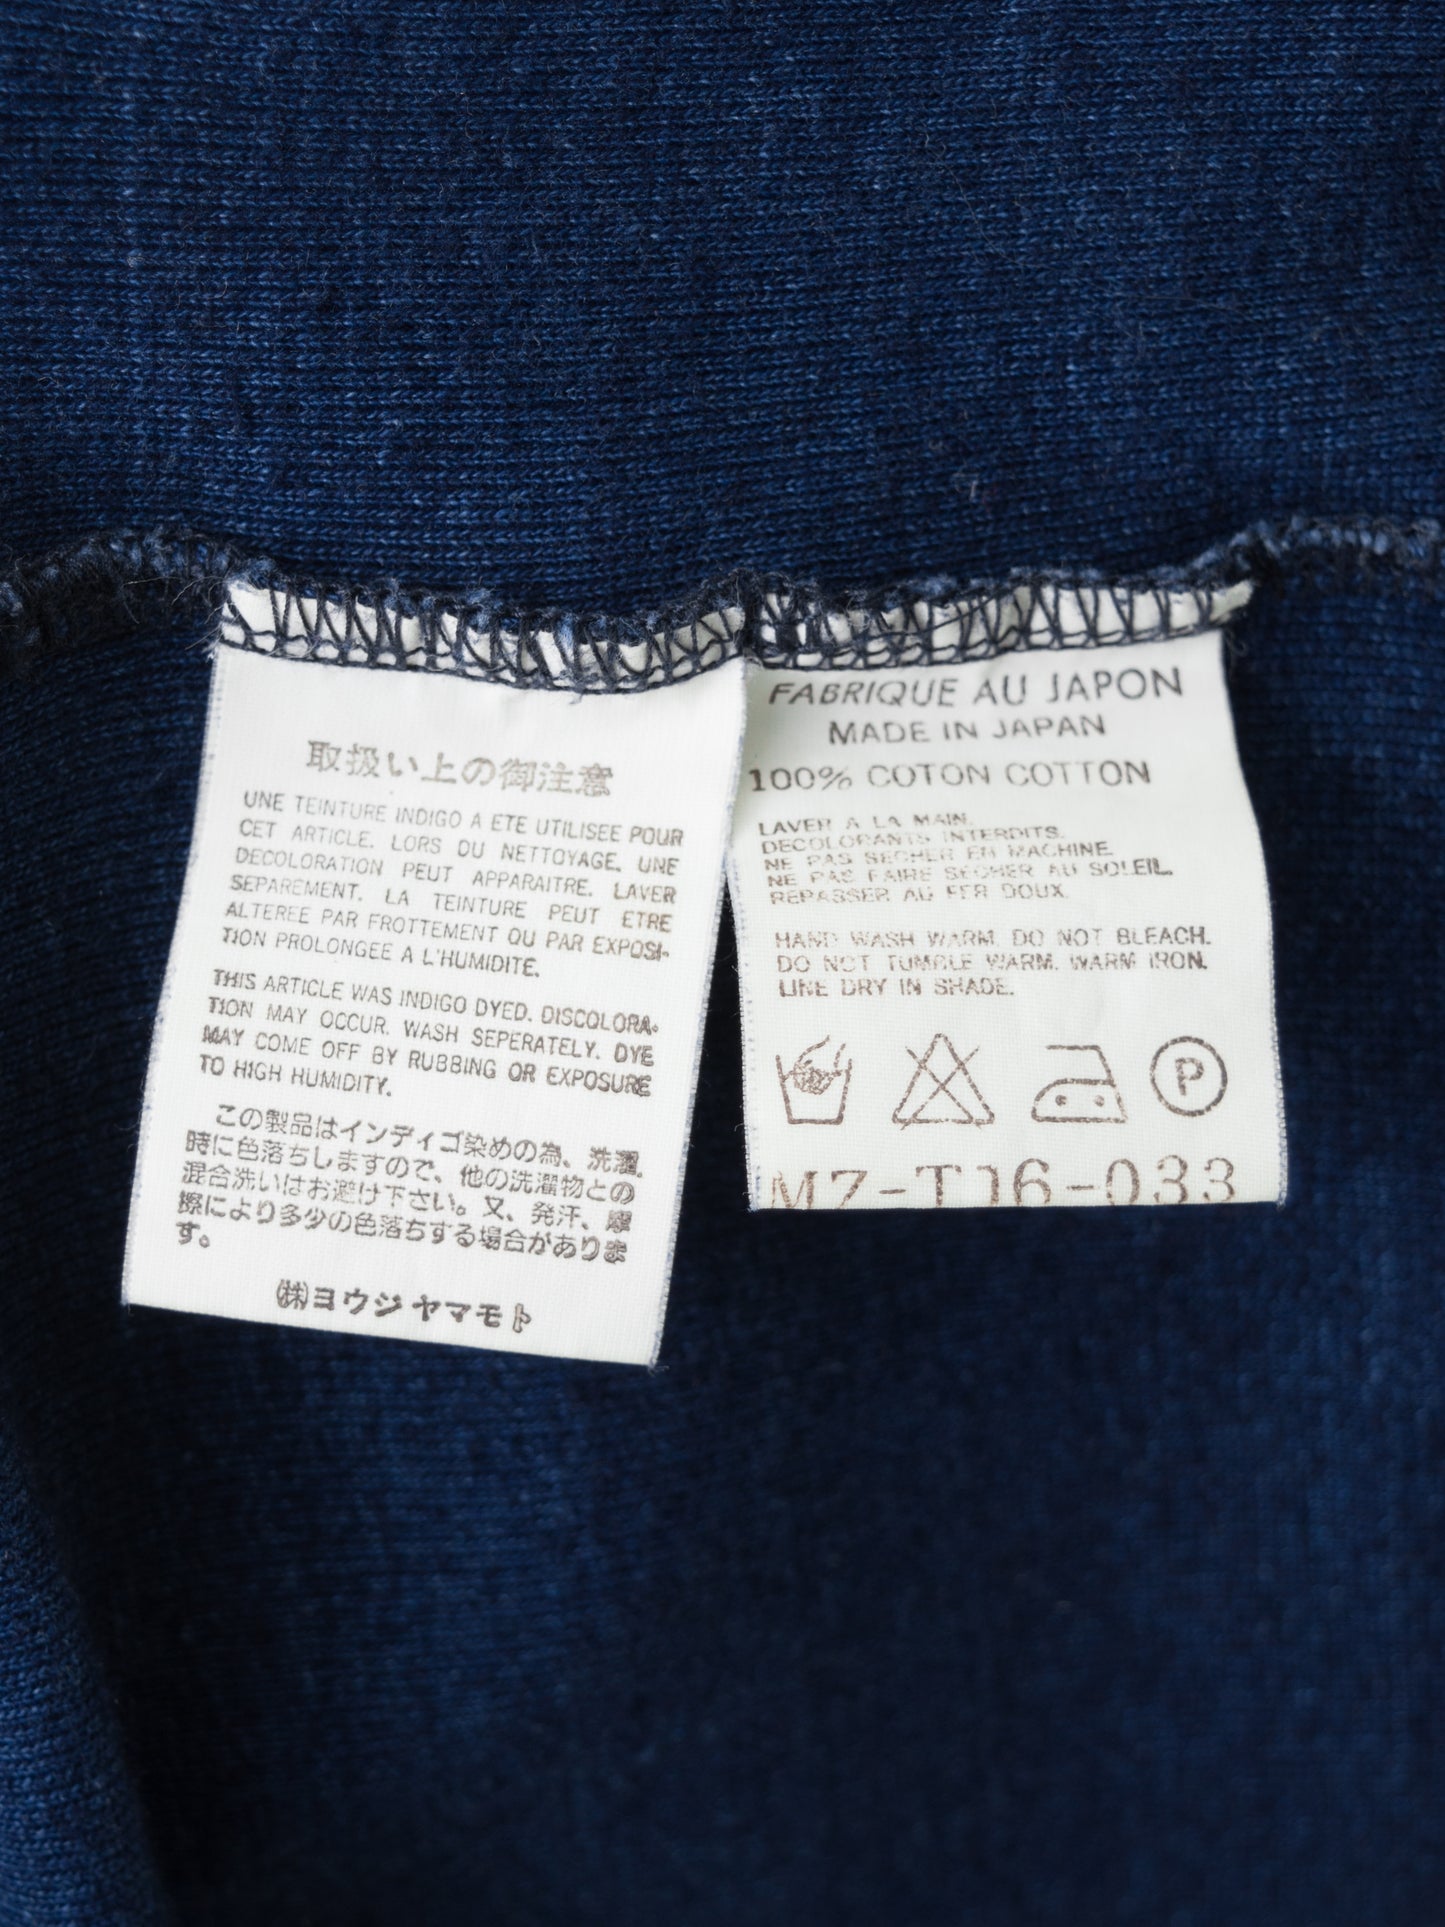 garment dyed v-neck longsleeve indigo ∙ cotton ∙ one size